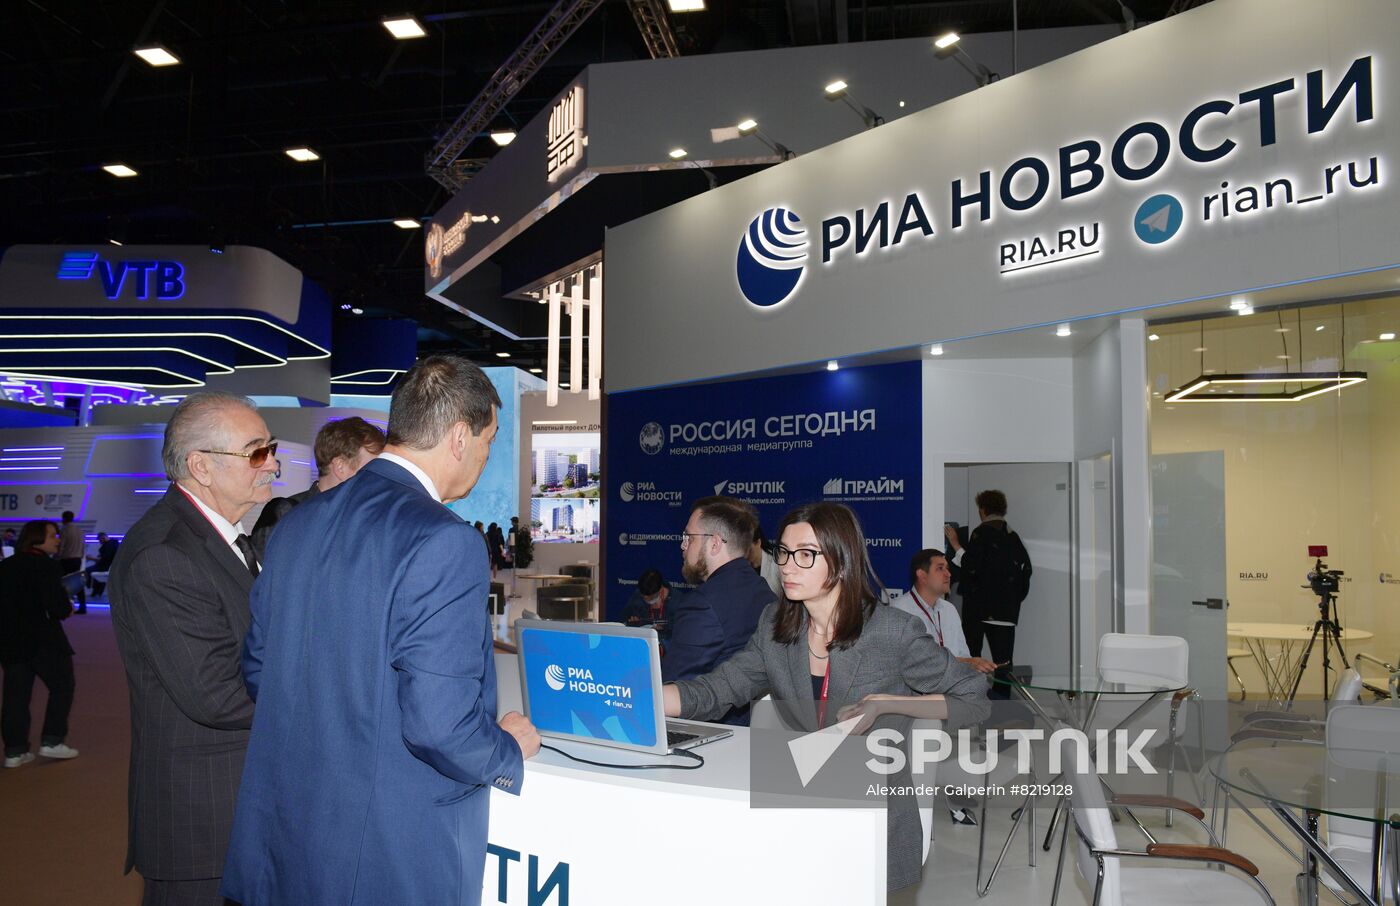 Russia SPIEF Rossiya Segodnya Exhibition Stall